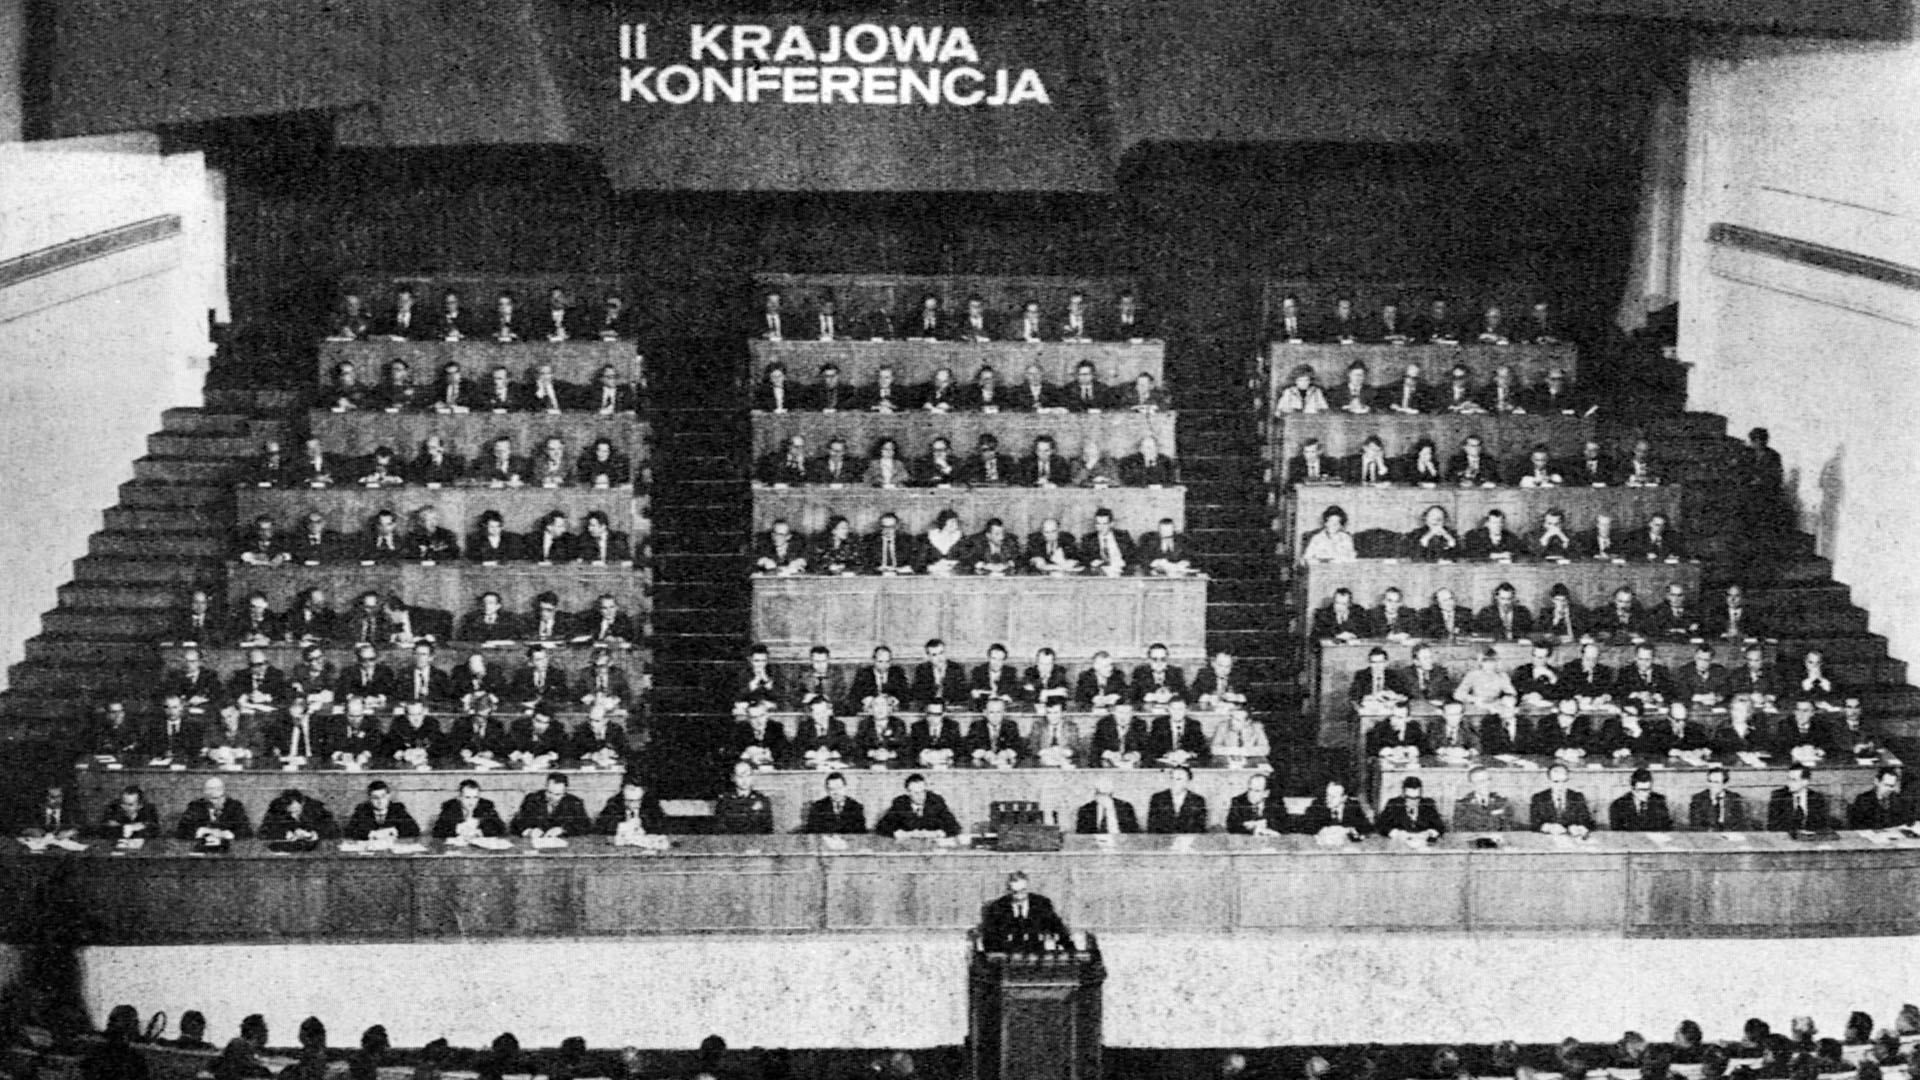 PZPR - II krajowa konferencja 1978